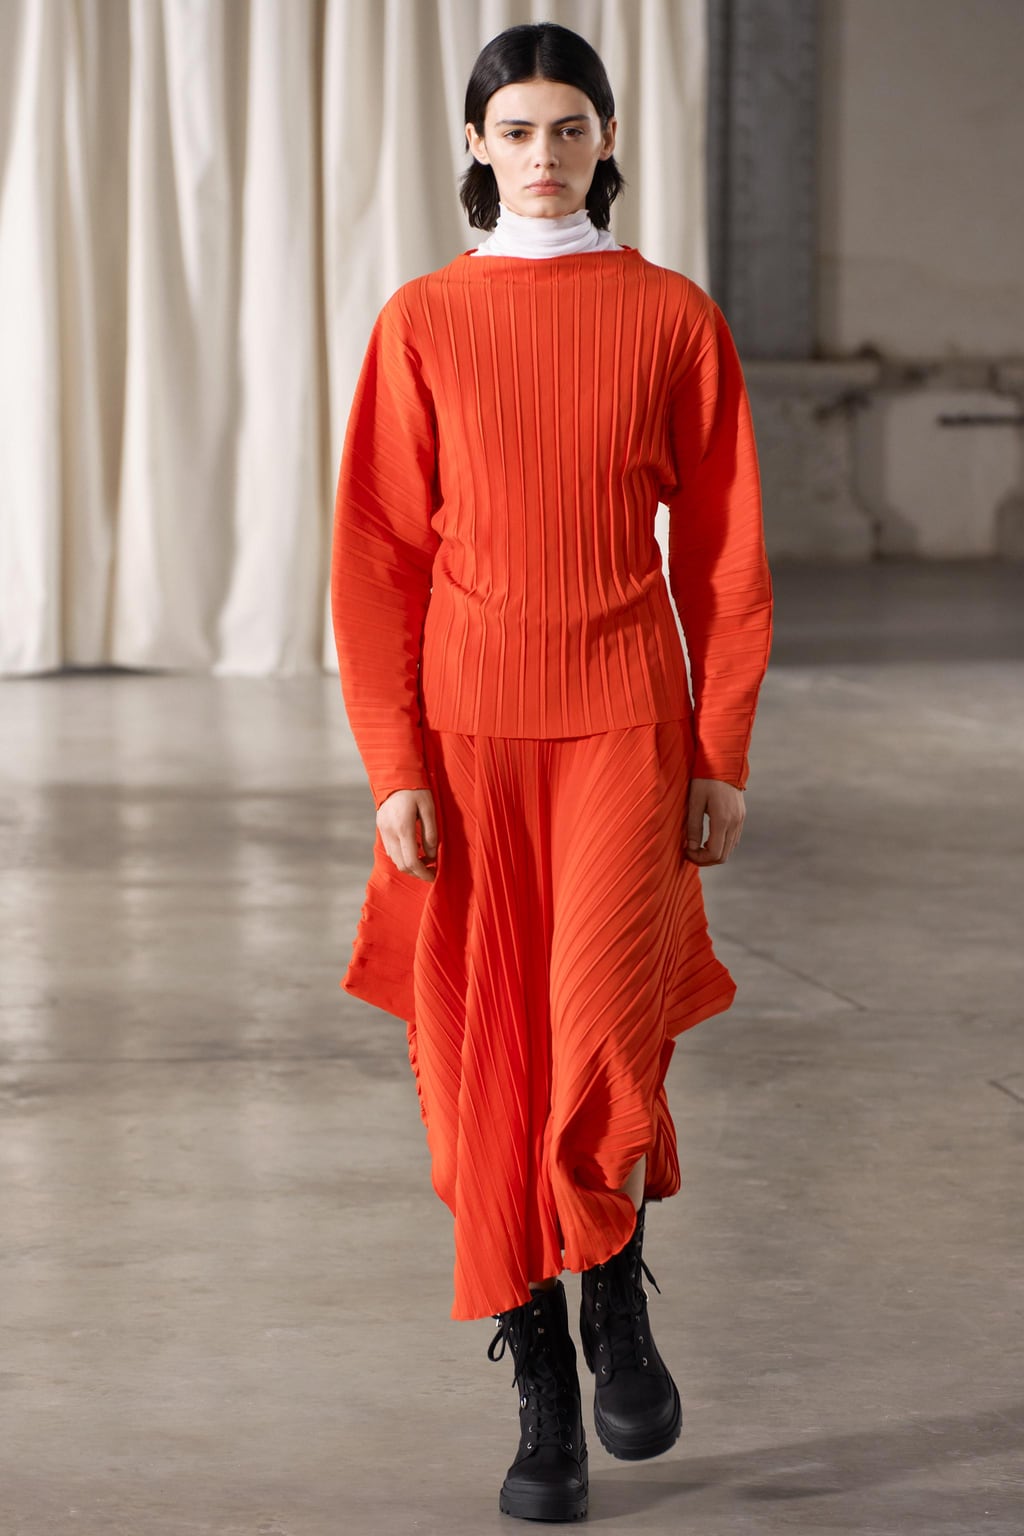 Асимметричная юбка со складками ZARA, красный апельсин юбка женская джинсовая плиссированная с завышенной талией пикантная короткая мини юбка в корейском стиле уличная одежда черная